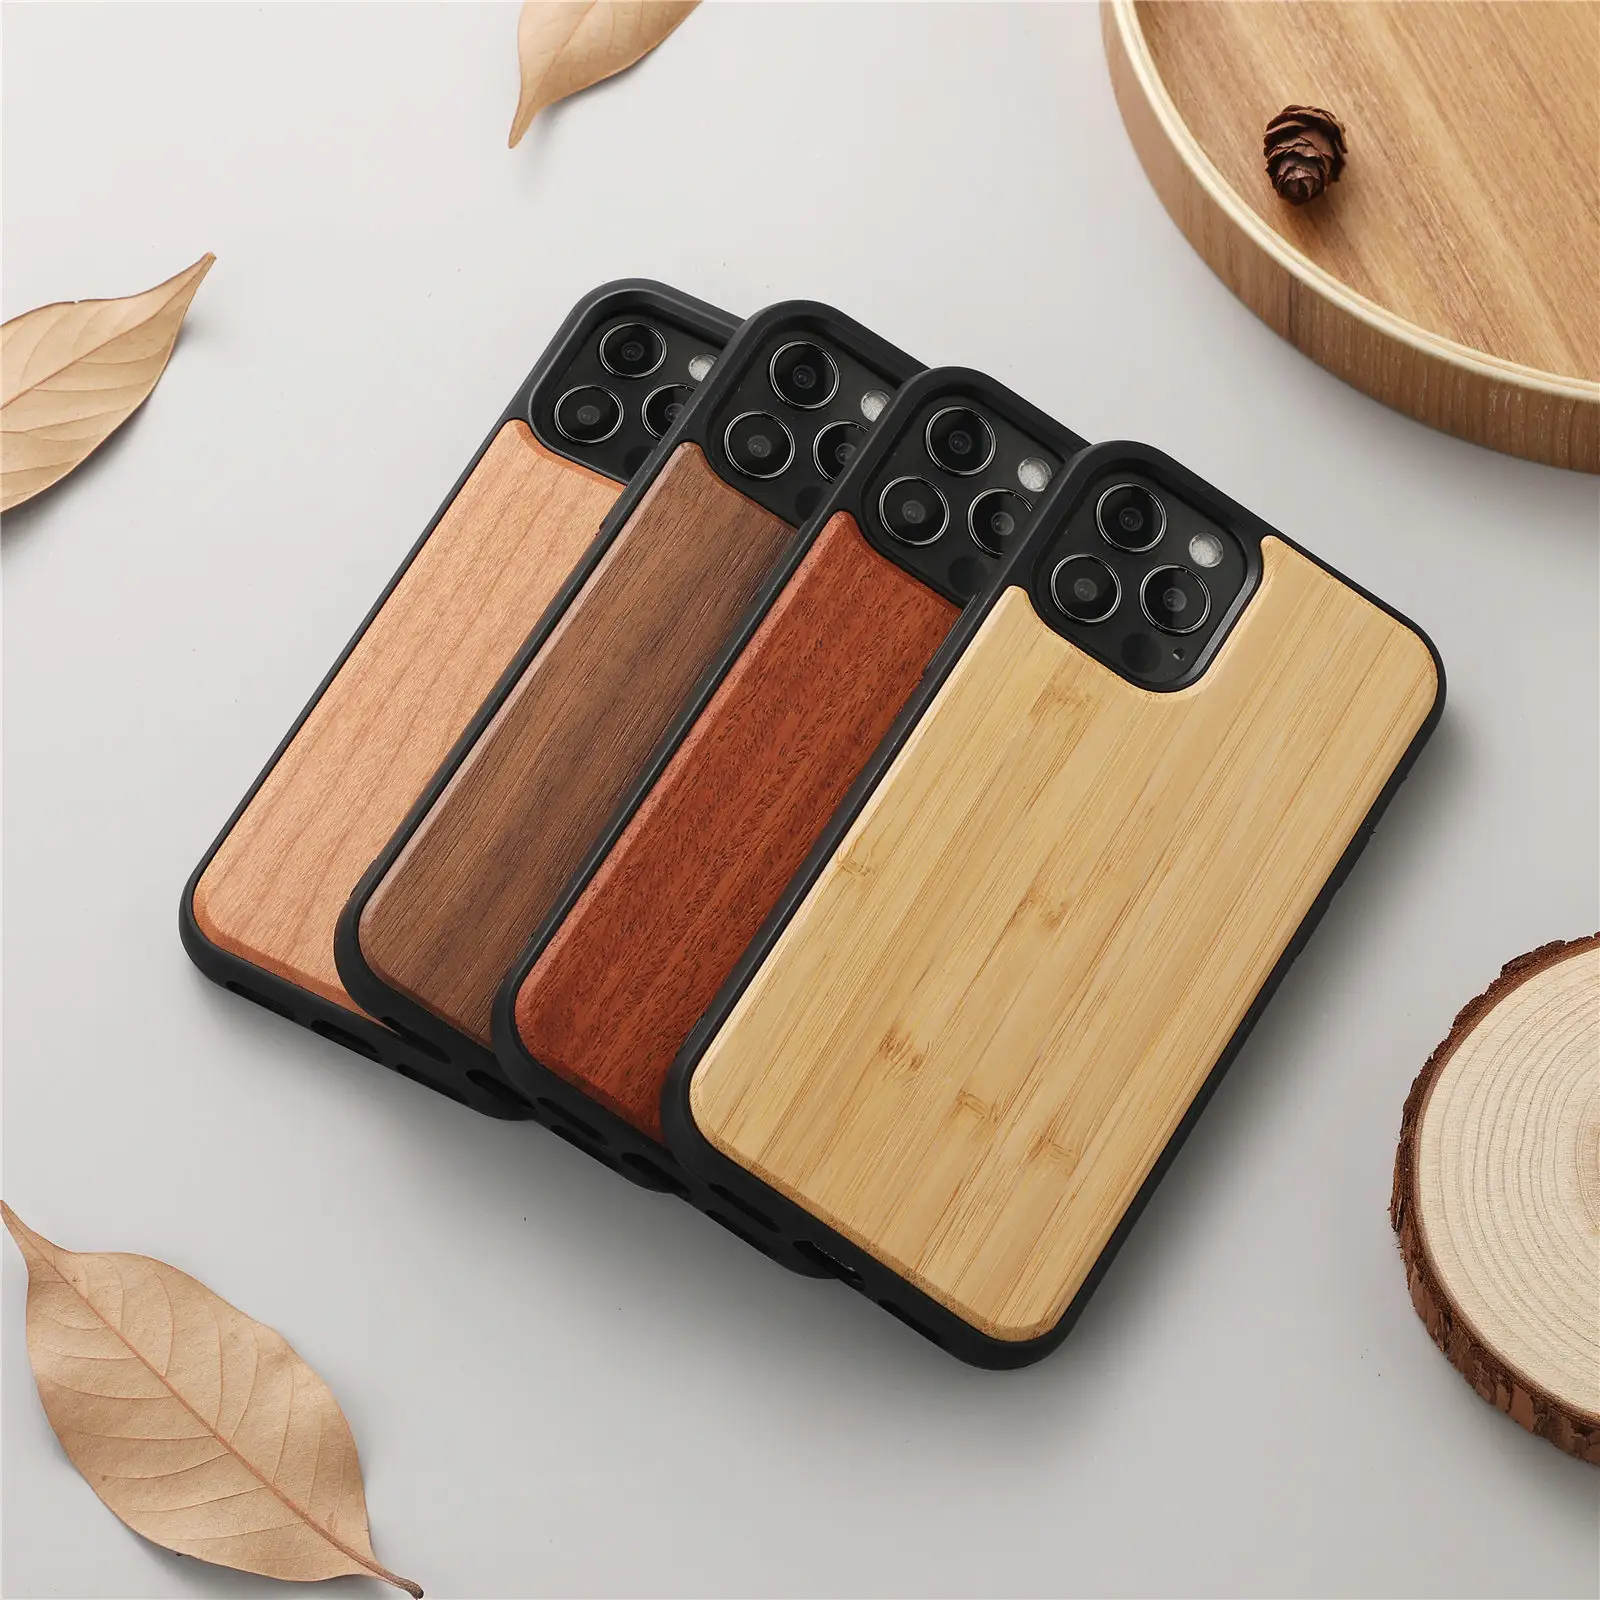 Benutzer definierte Holz Telefon hülle Umwelt freundliche echte Holz zellen abdeckung Weiche TPU Stoß feste Handy zubehör Für Iphone 13 12 11 Pro max